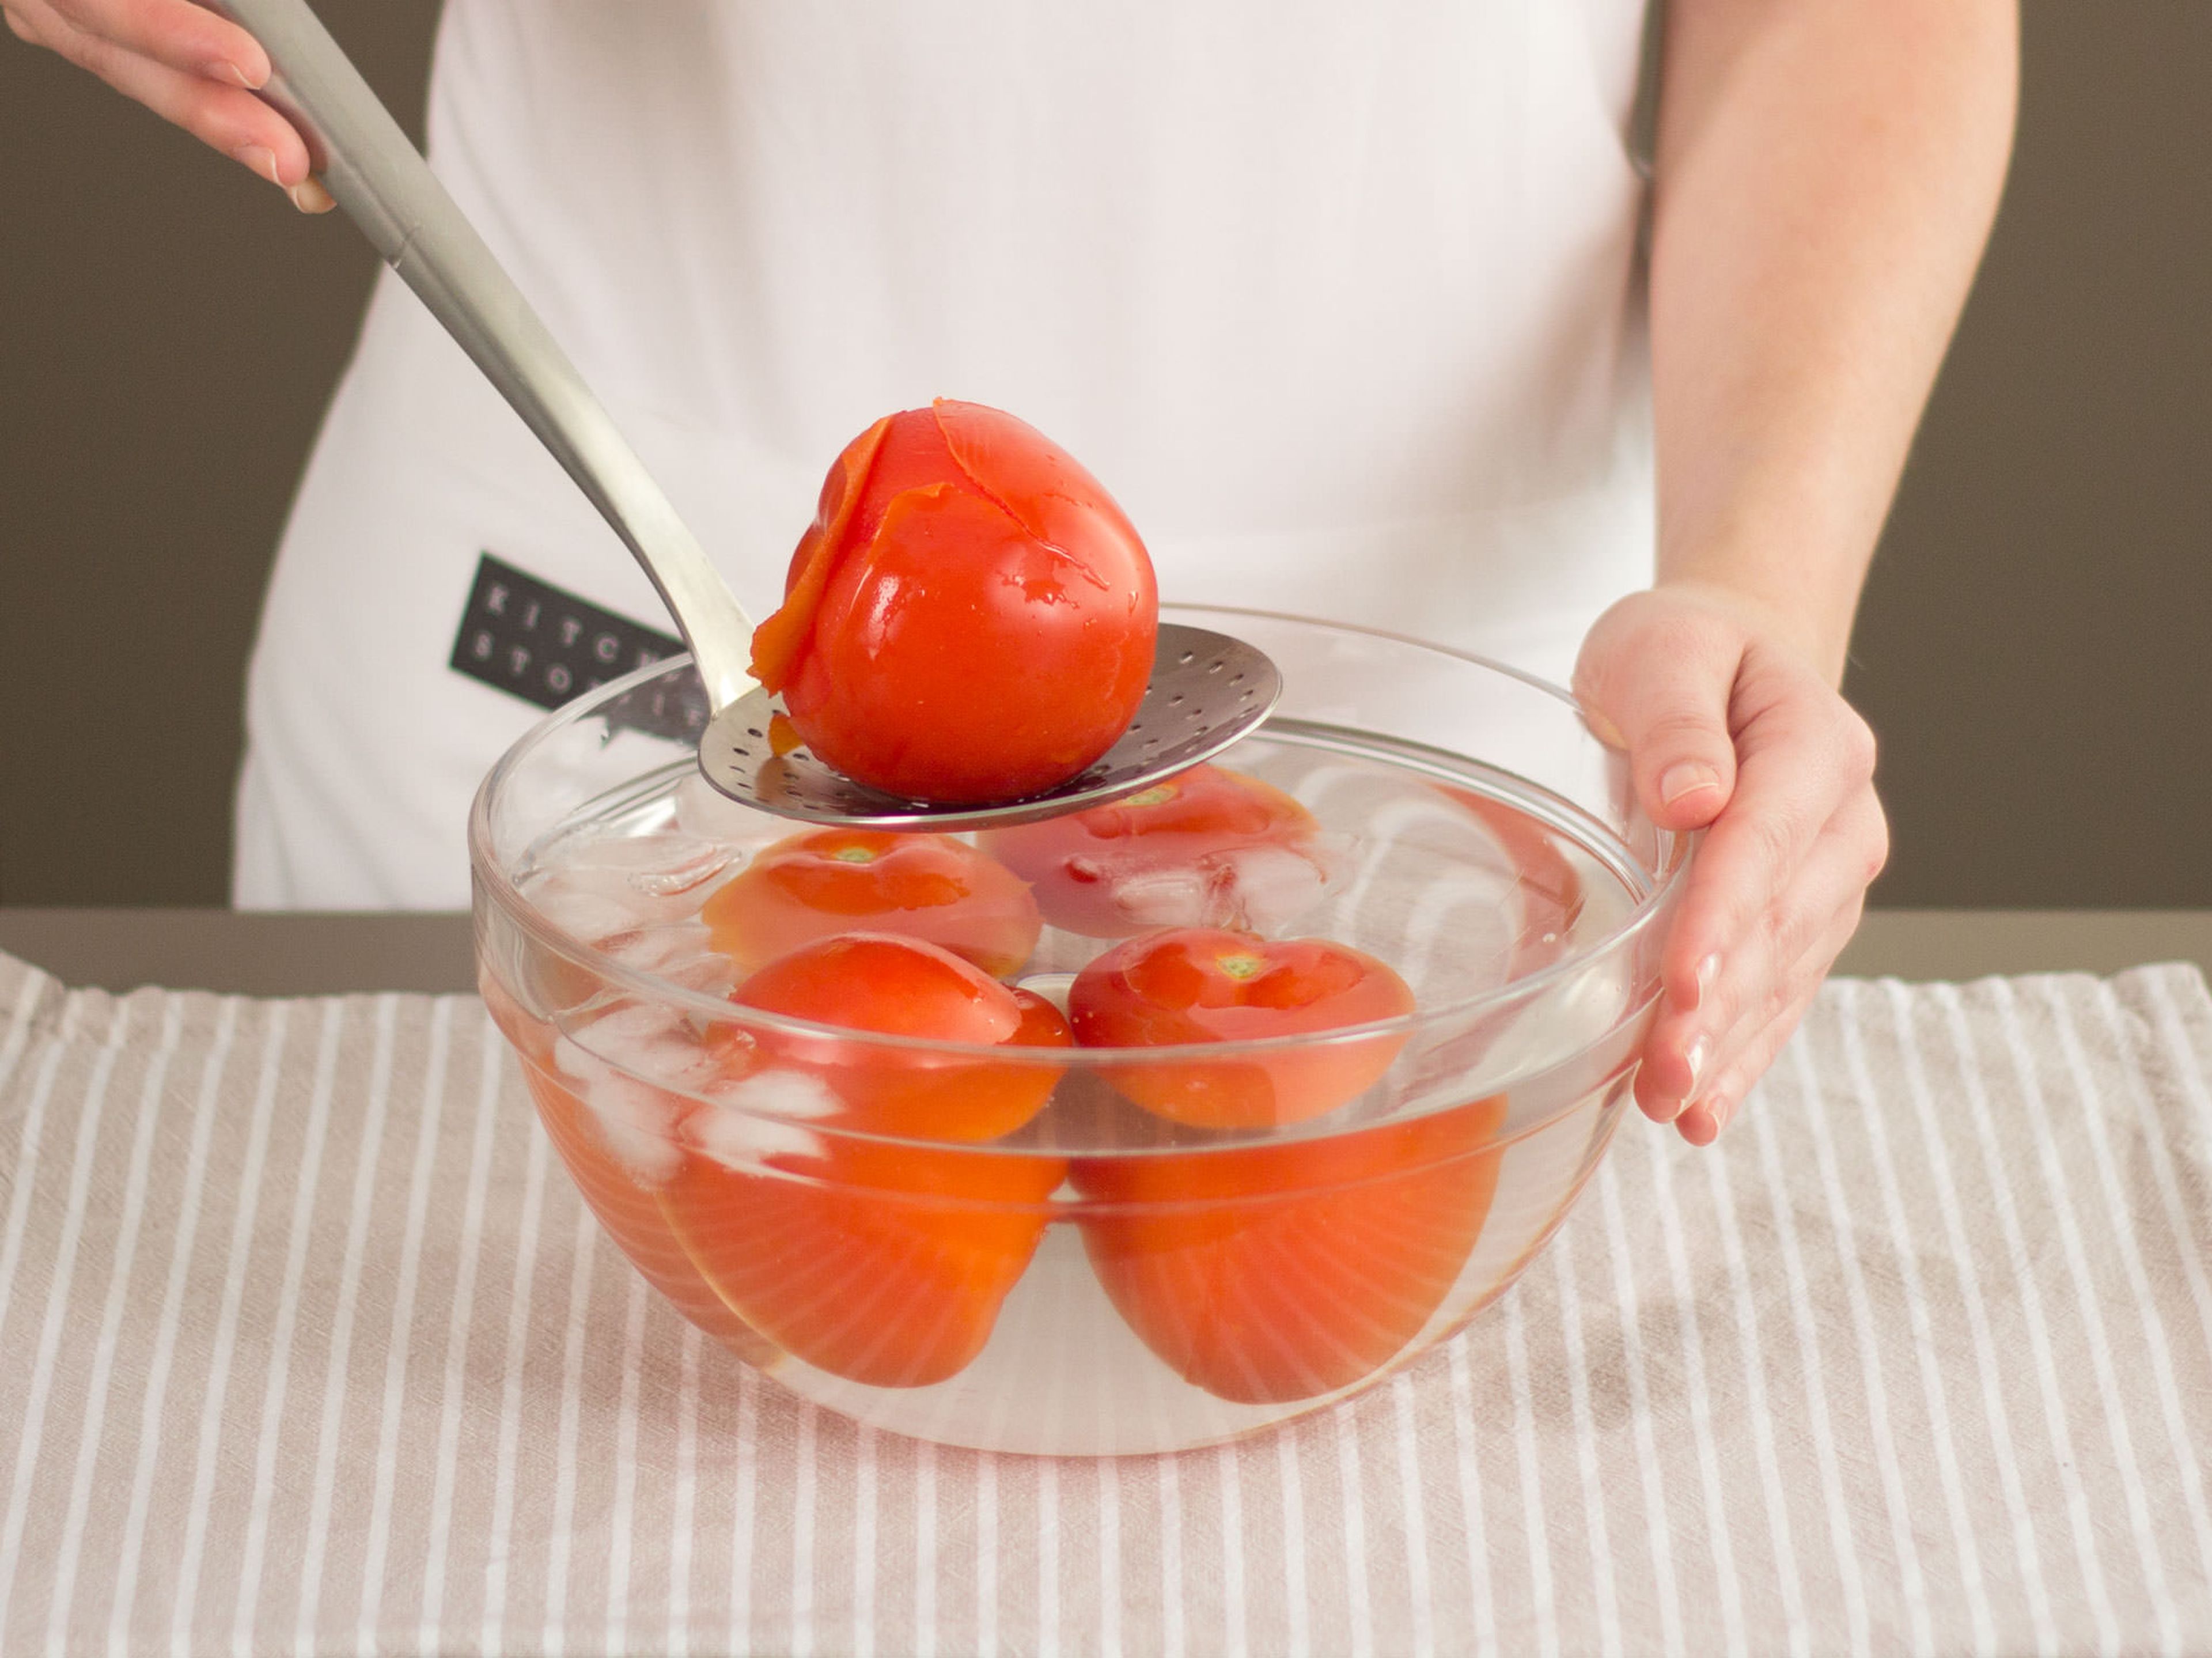 Backofen auf 150°C vorheizen. Tomaten ca. 1 – 2 Min. in kochendem Wasser blanchieren und anschließend in Eiswasser abschrecken.